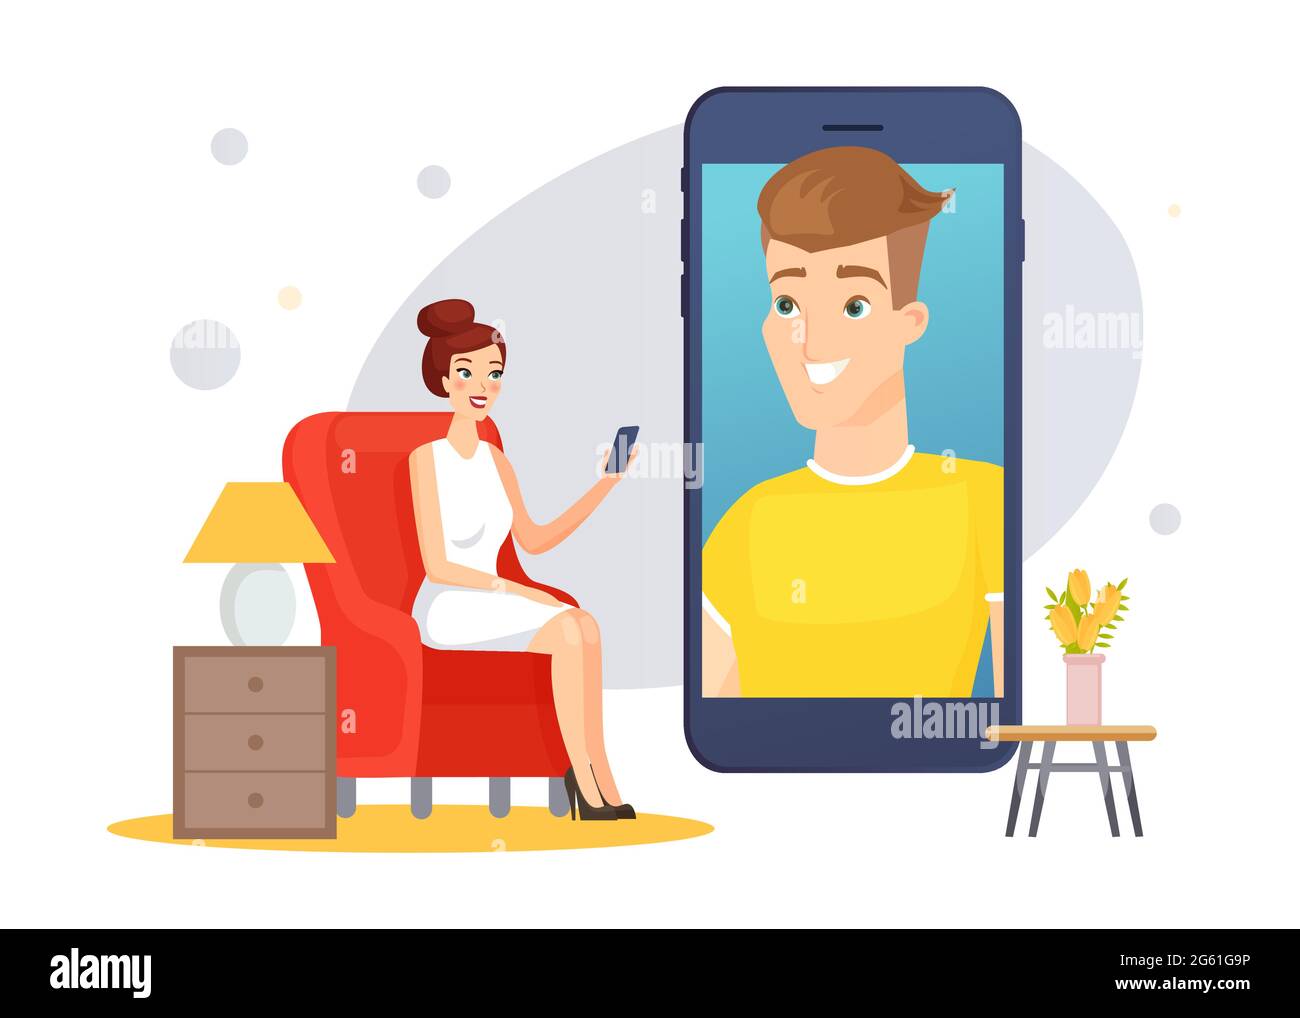 Video-Chat-Kommunikation, glückliche Frau chatten mit Mann online in virtuellen Gespräch Stock Vektor